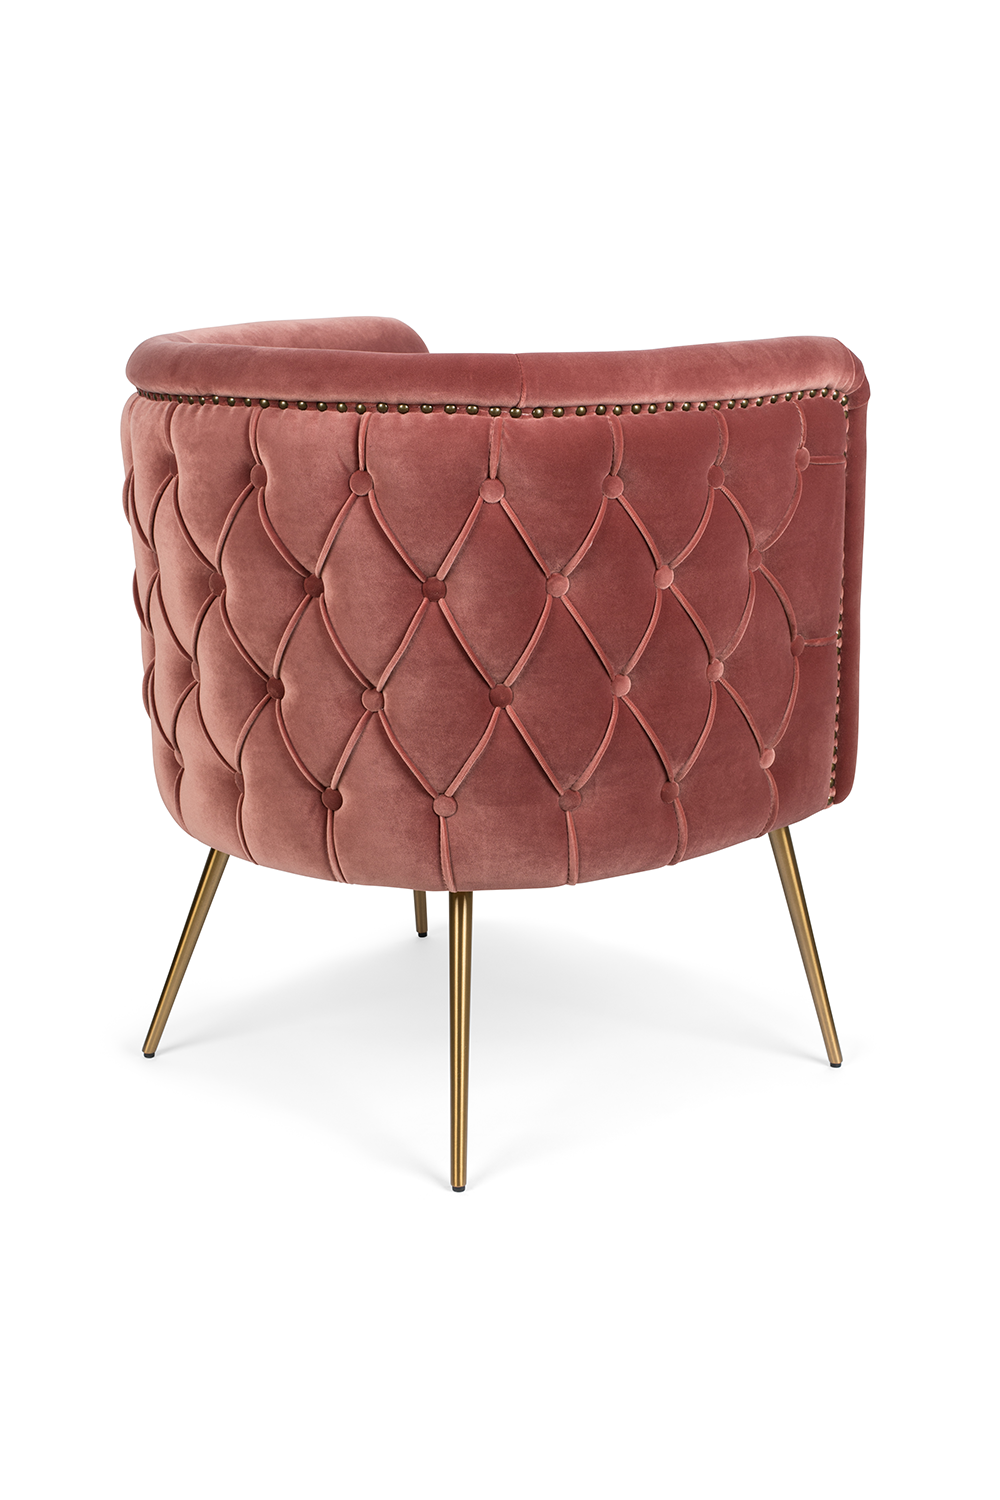 SUCH A STUD Loungesessel in Pink präsentiert im Onlineshop von KAQTU Design AG. Sessel ist von Bold Monkey